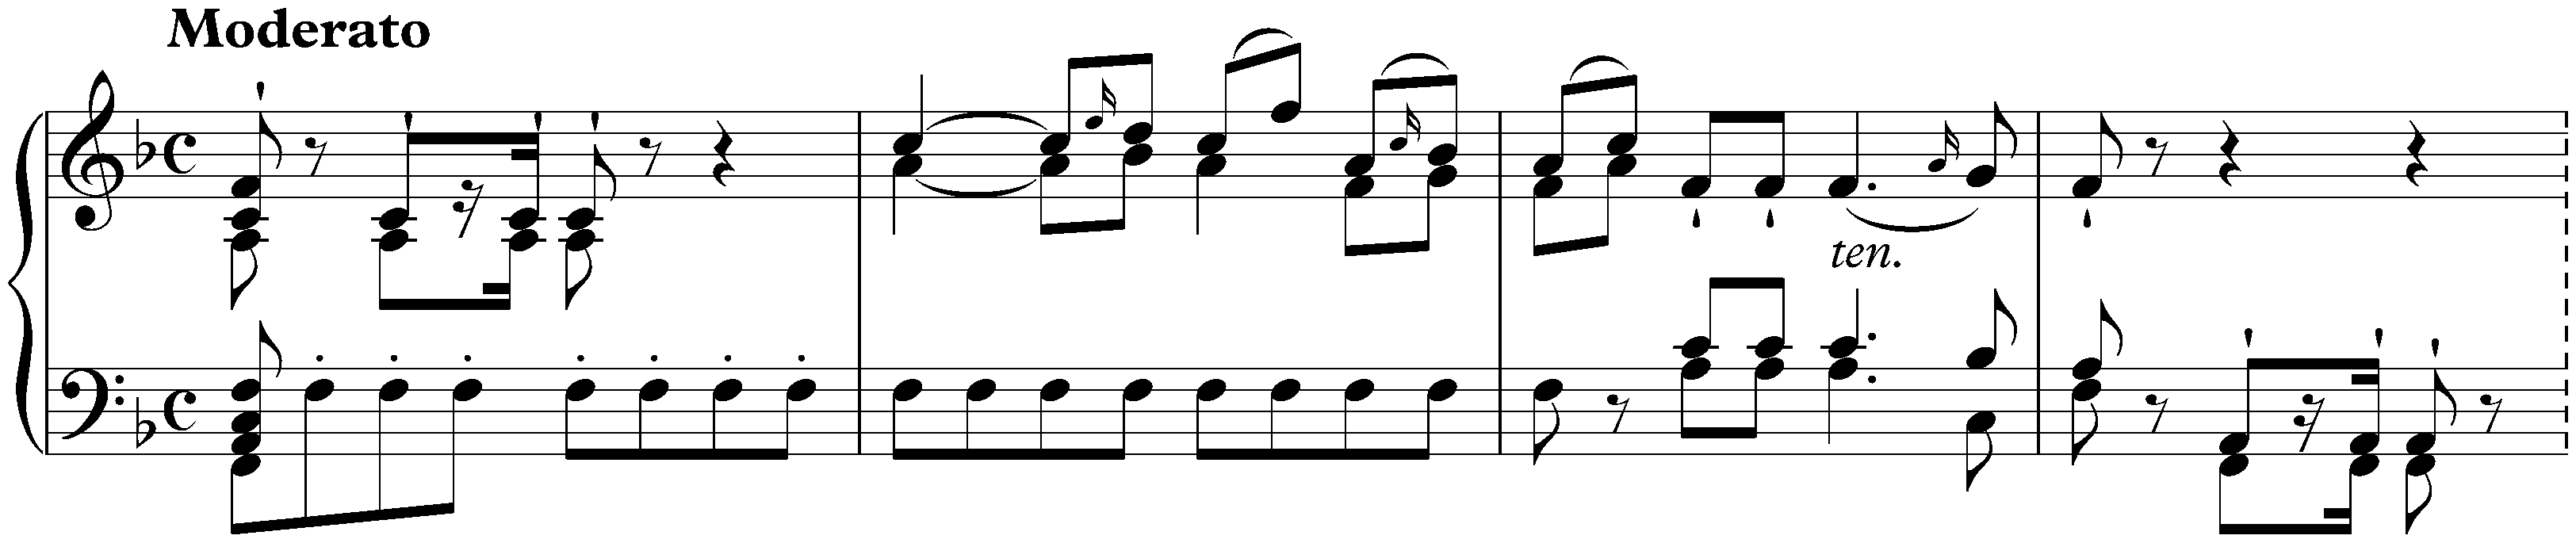 Sonata in F major, Hob. XVI:29; 1. Moderato